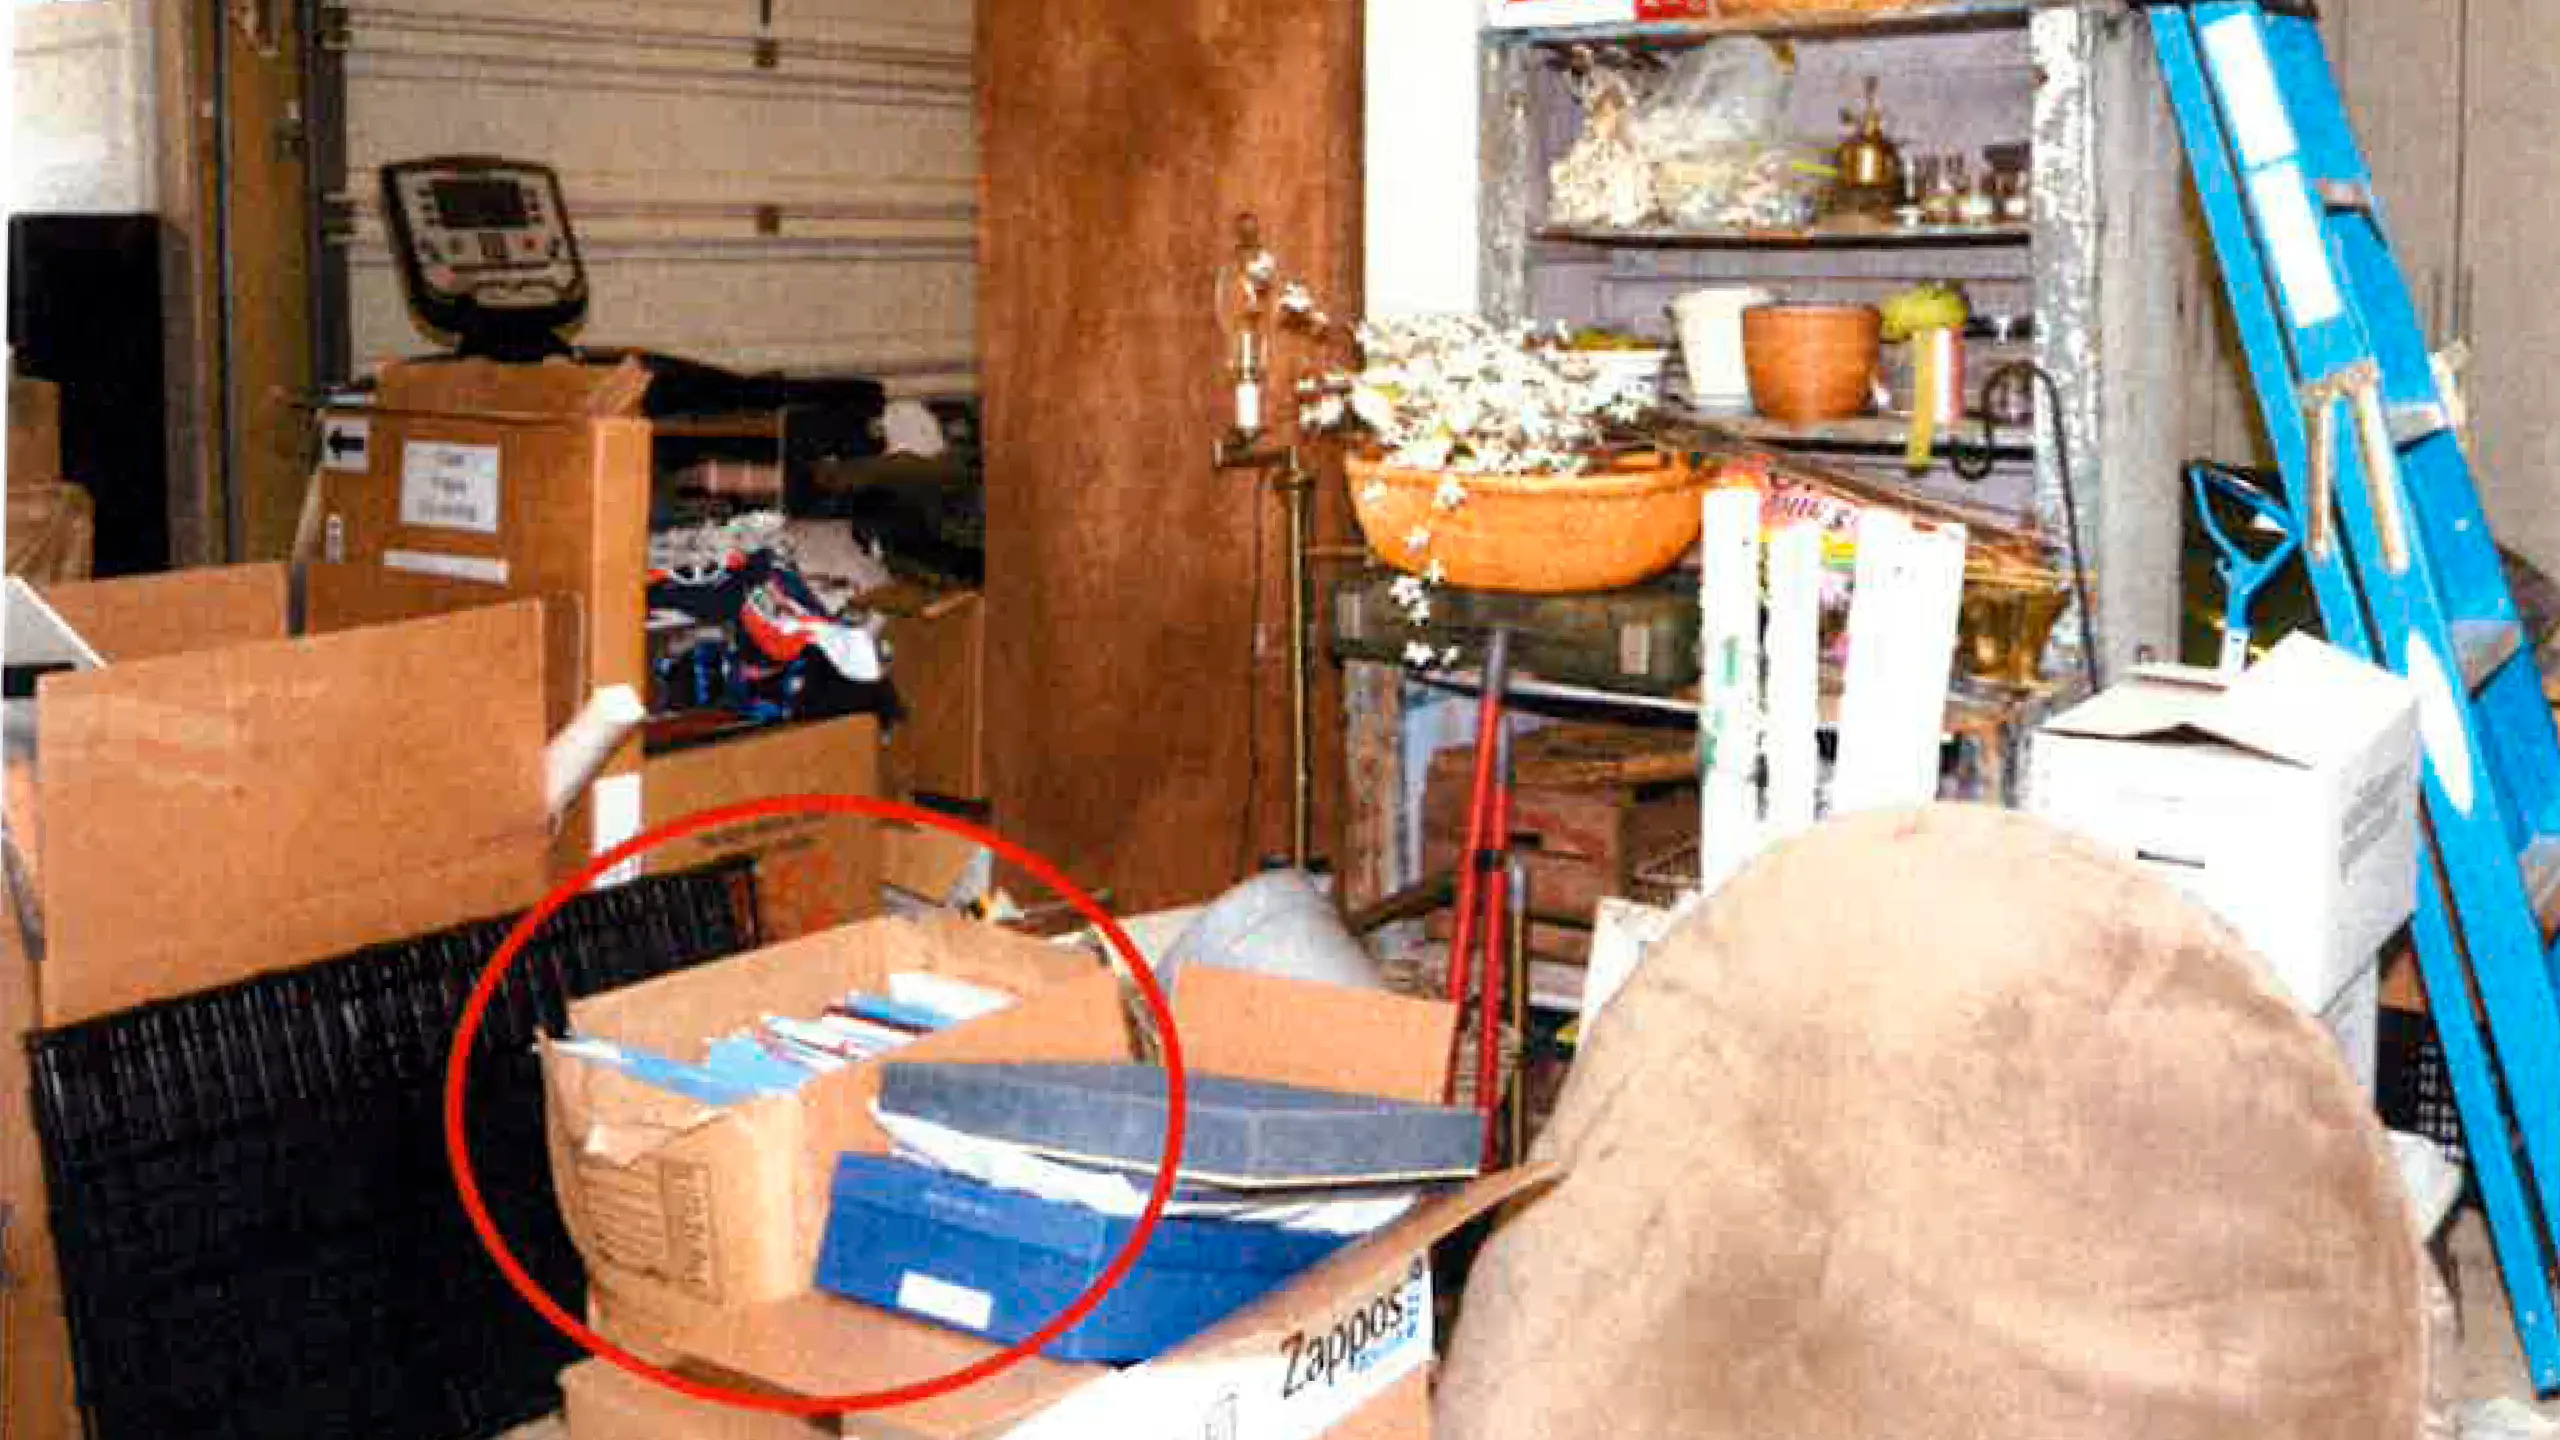 Alcuni documenti segreti sull’Afghanistan conservati nel garage di Joe Biden in Delaware. Fonte: Department of Justice